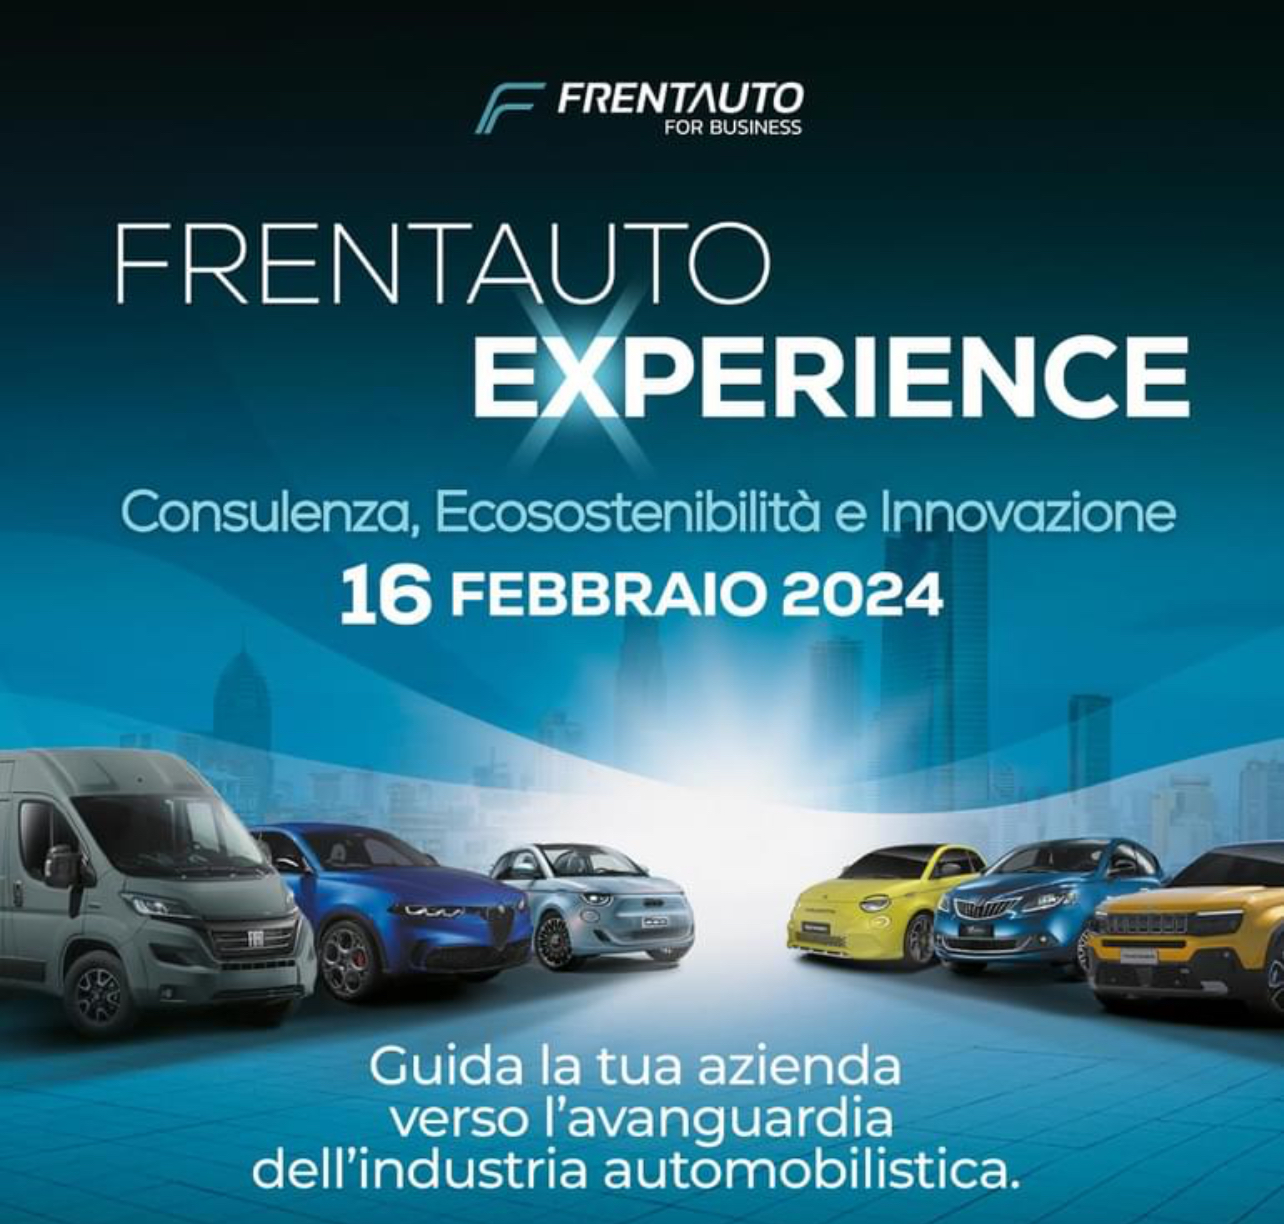 Frentauto Experience 2024: un futuro innovativo nell’automotive!